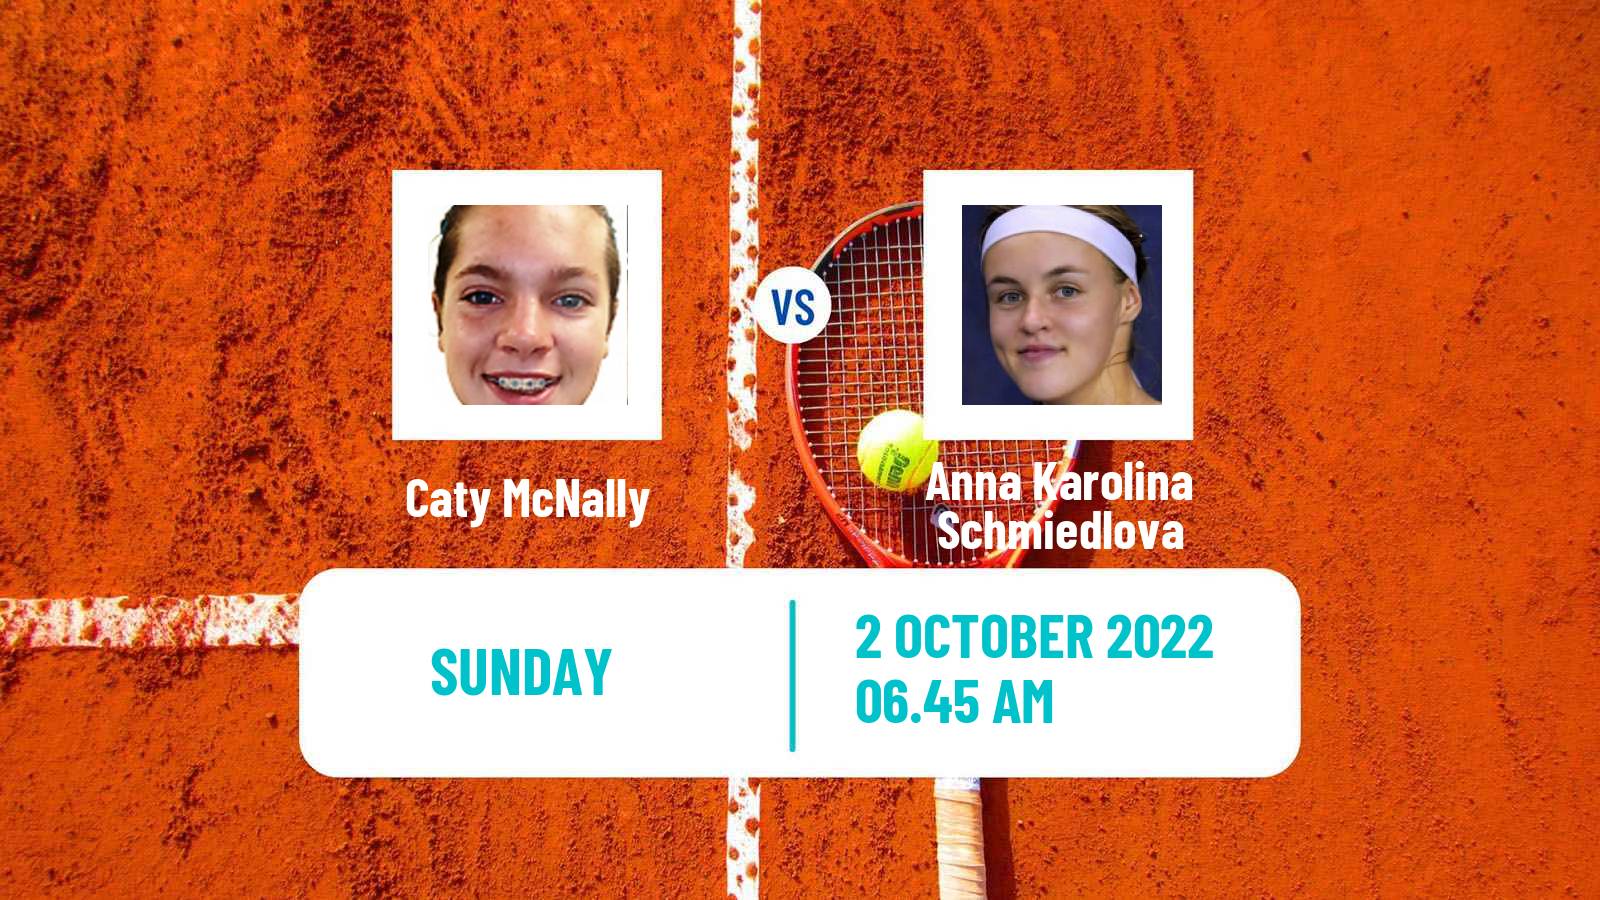 Tennis WTA Ostrava Caty McNally - Anna Karolina Schmiedlova